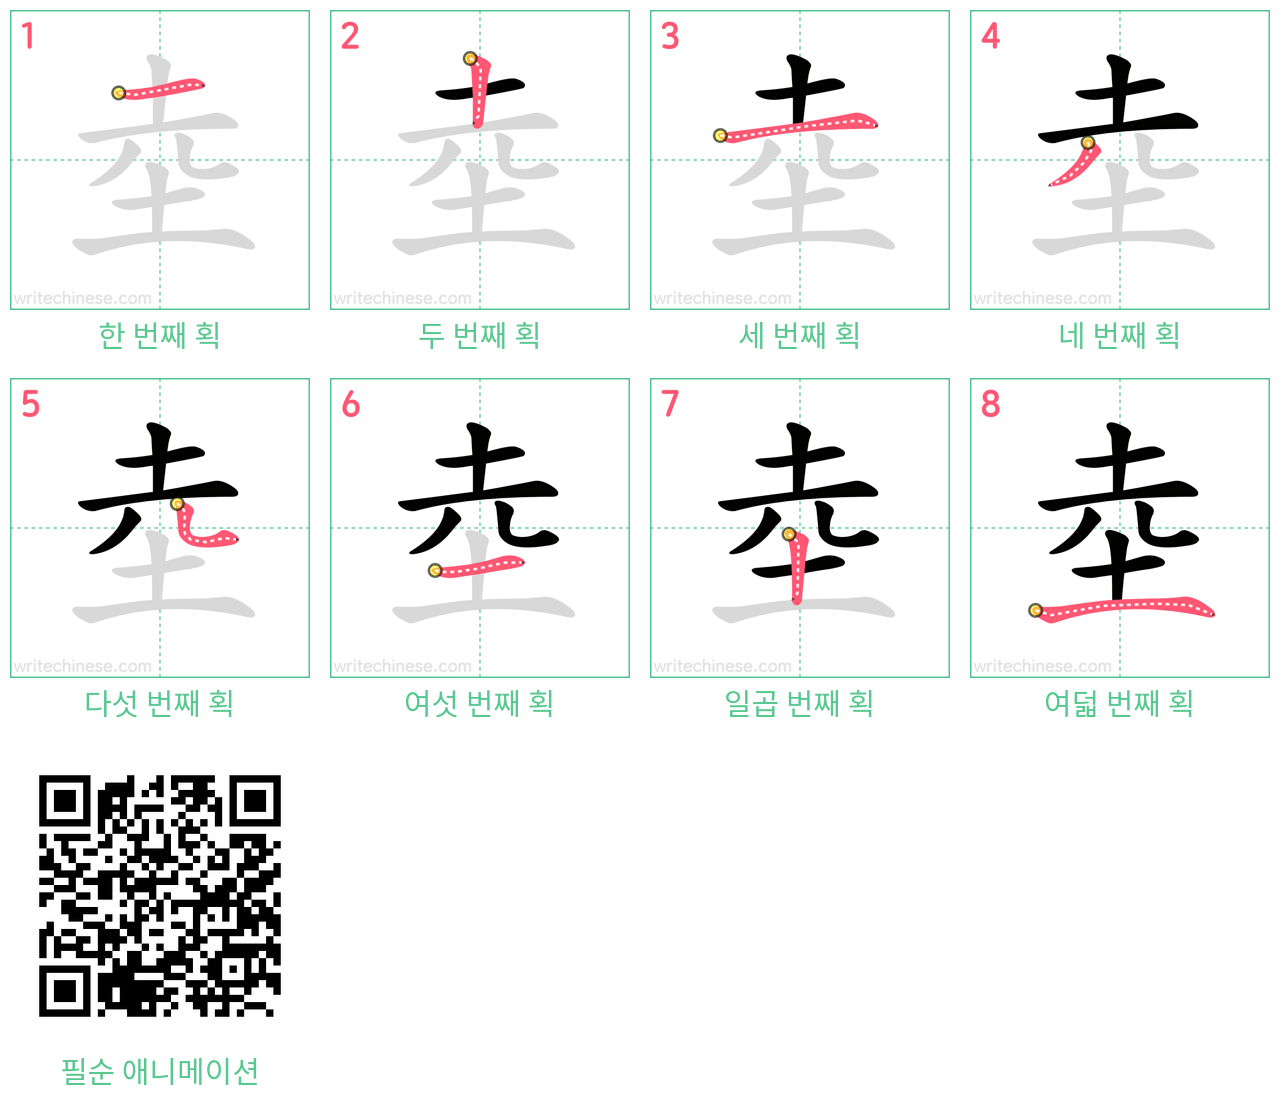 坴 step-by-step stroke order diagrams